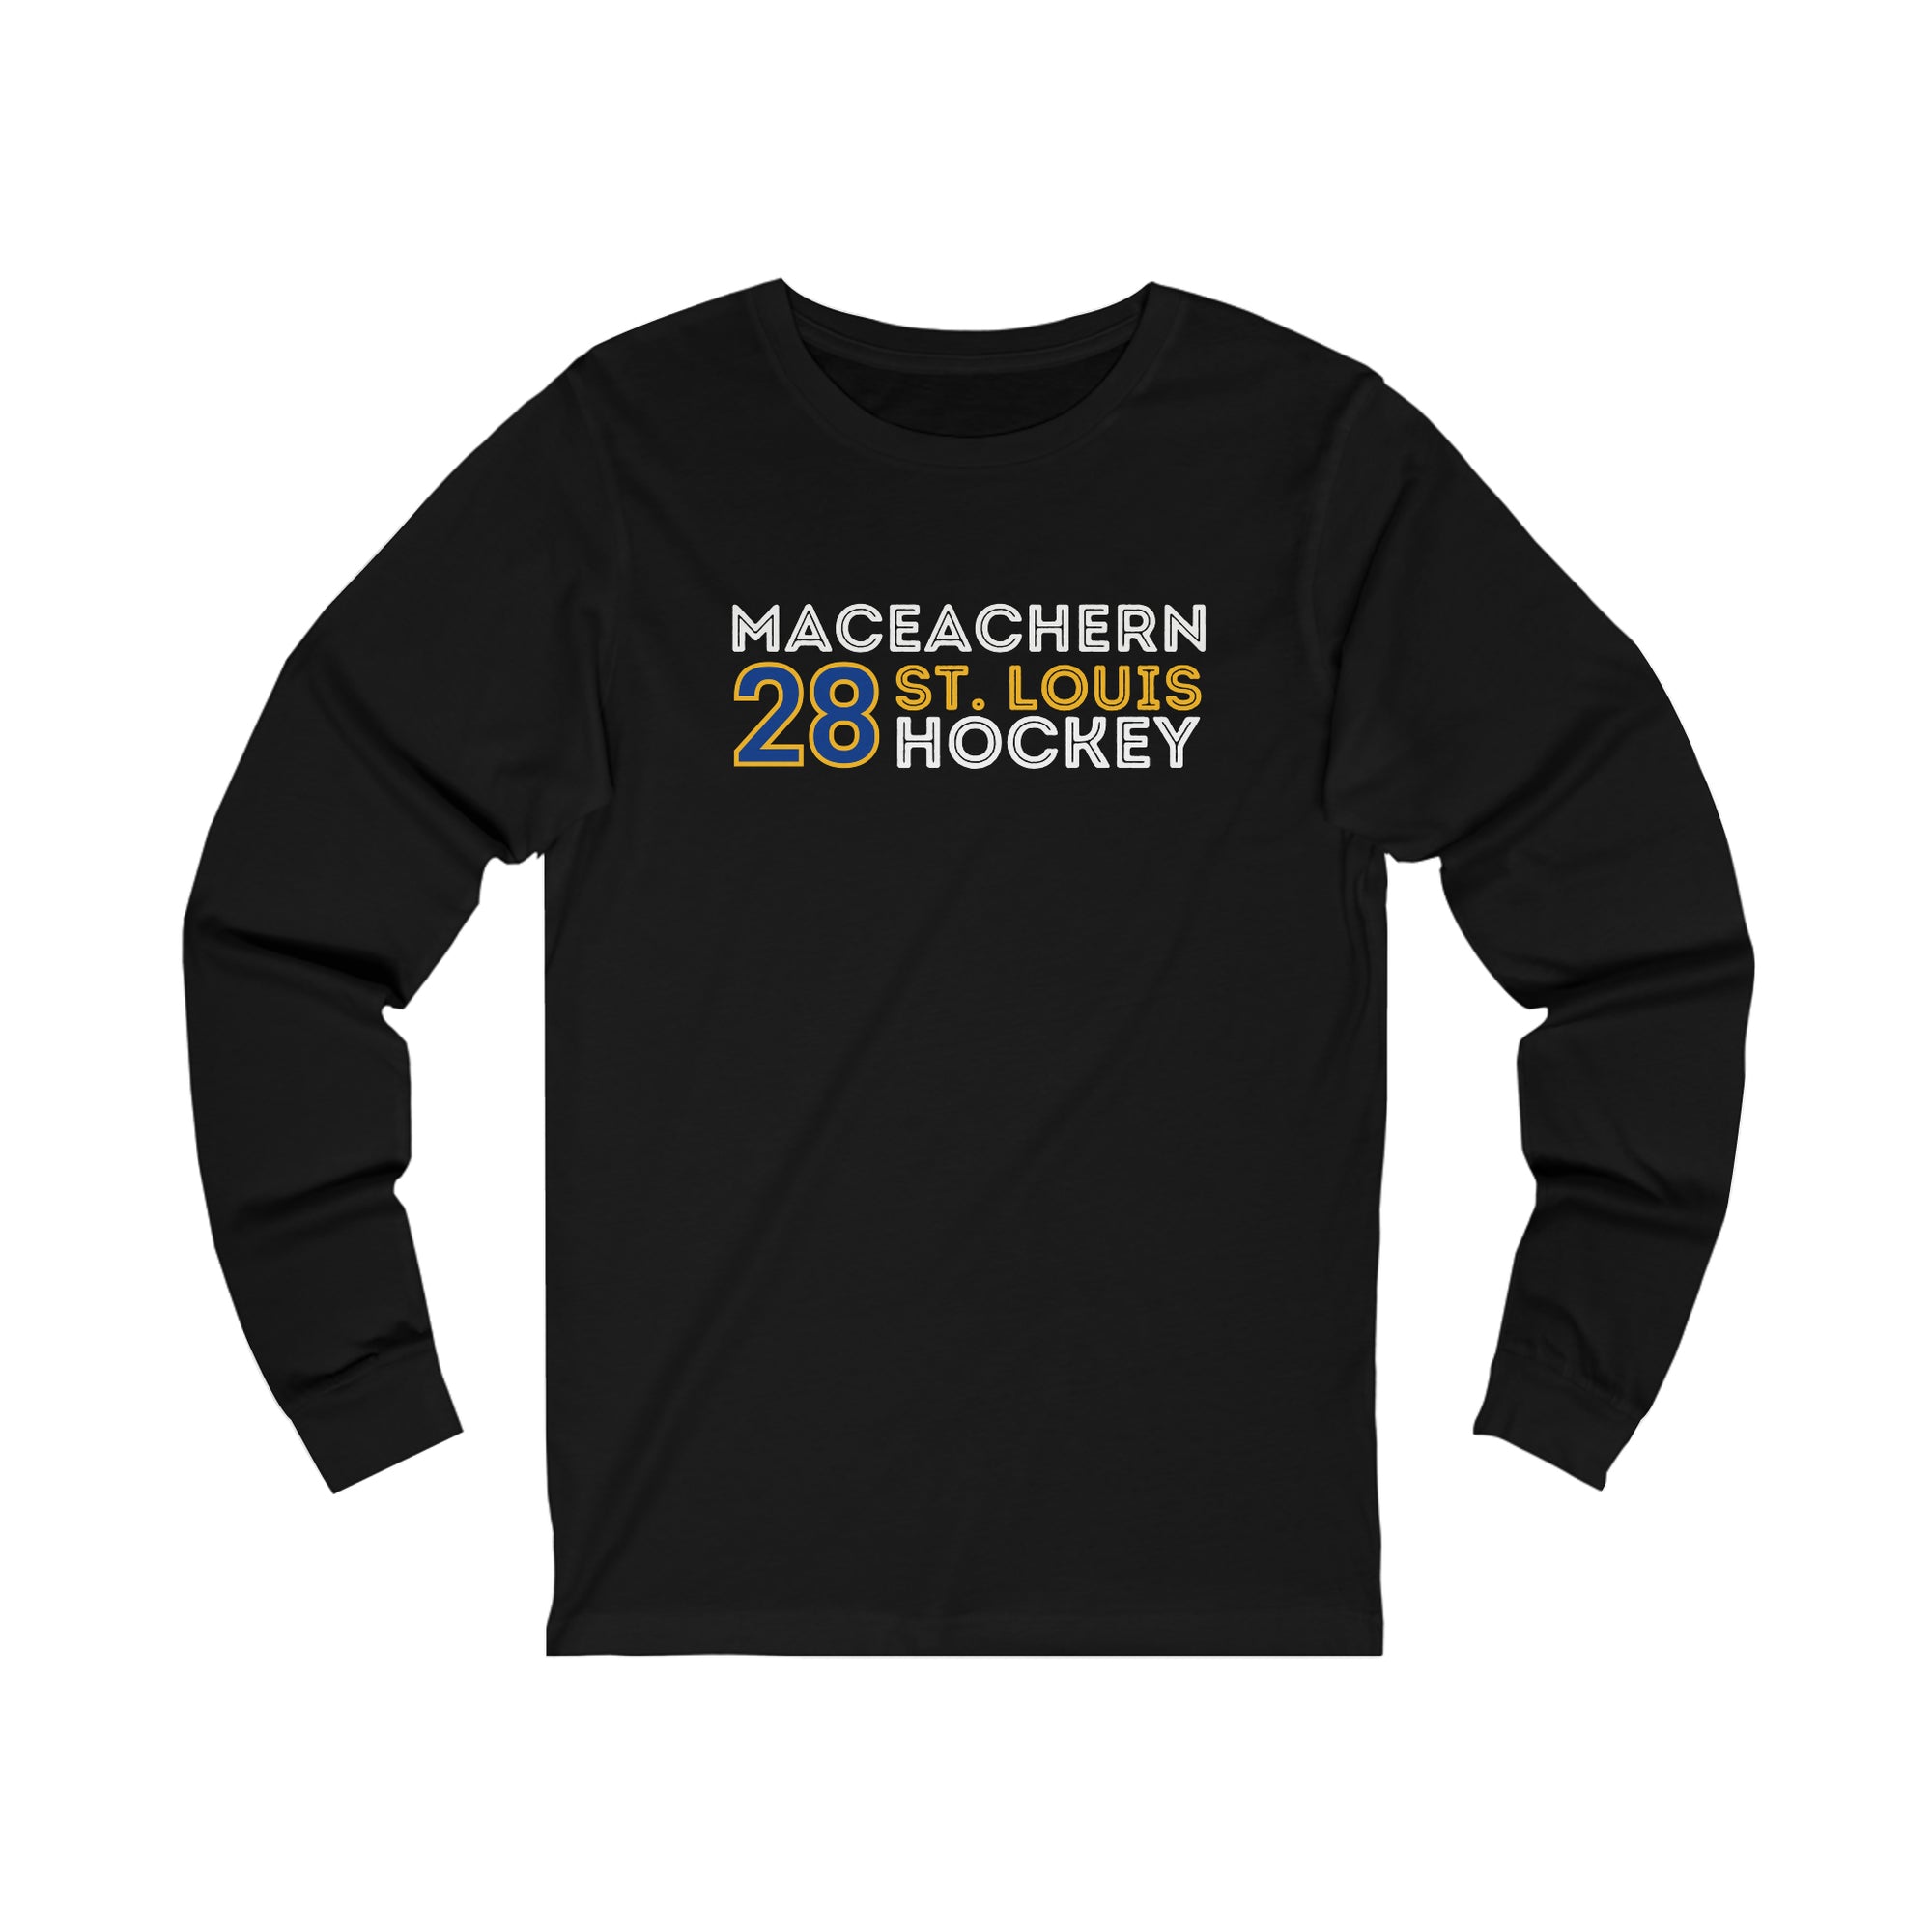 MacEachern 28 St. Louis Hockey Grafitti Wall Design Unisex Jersey Long Sleeve Shirt